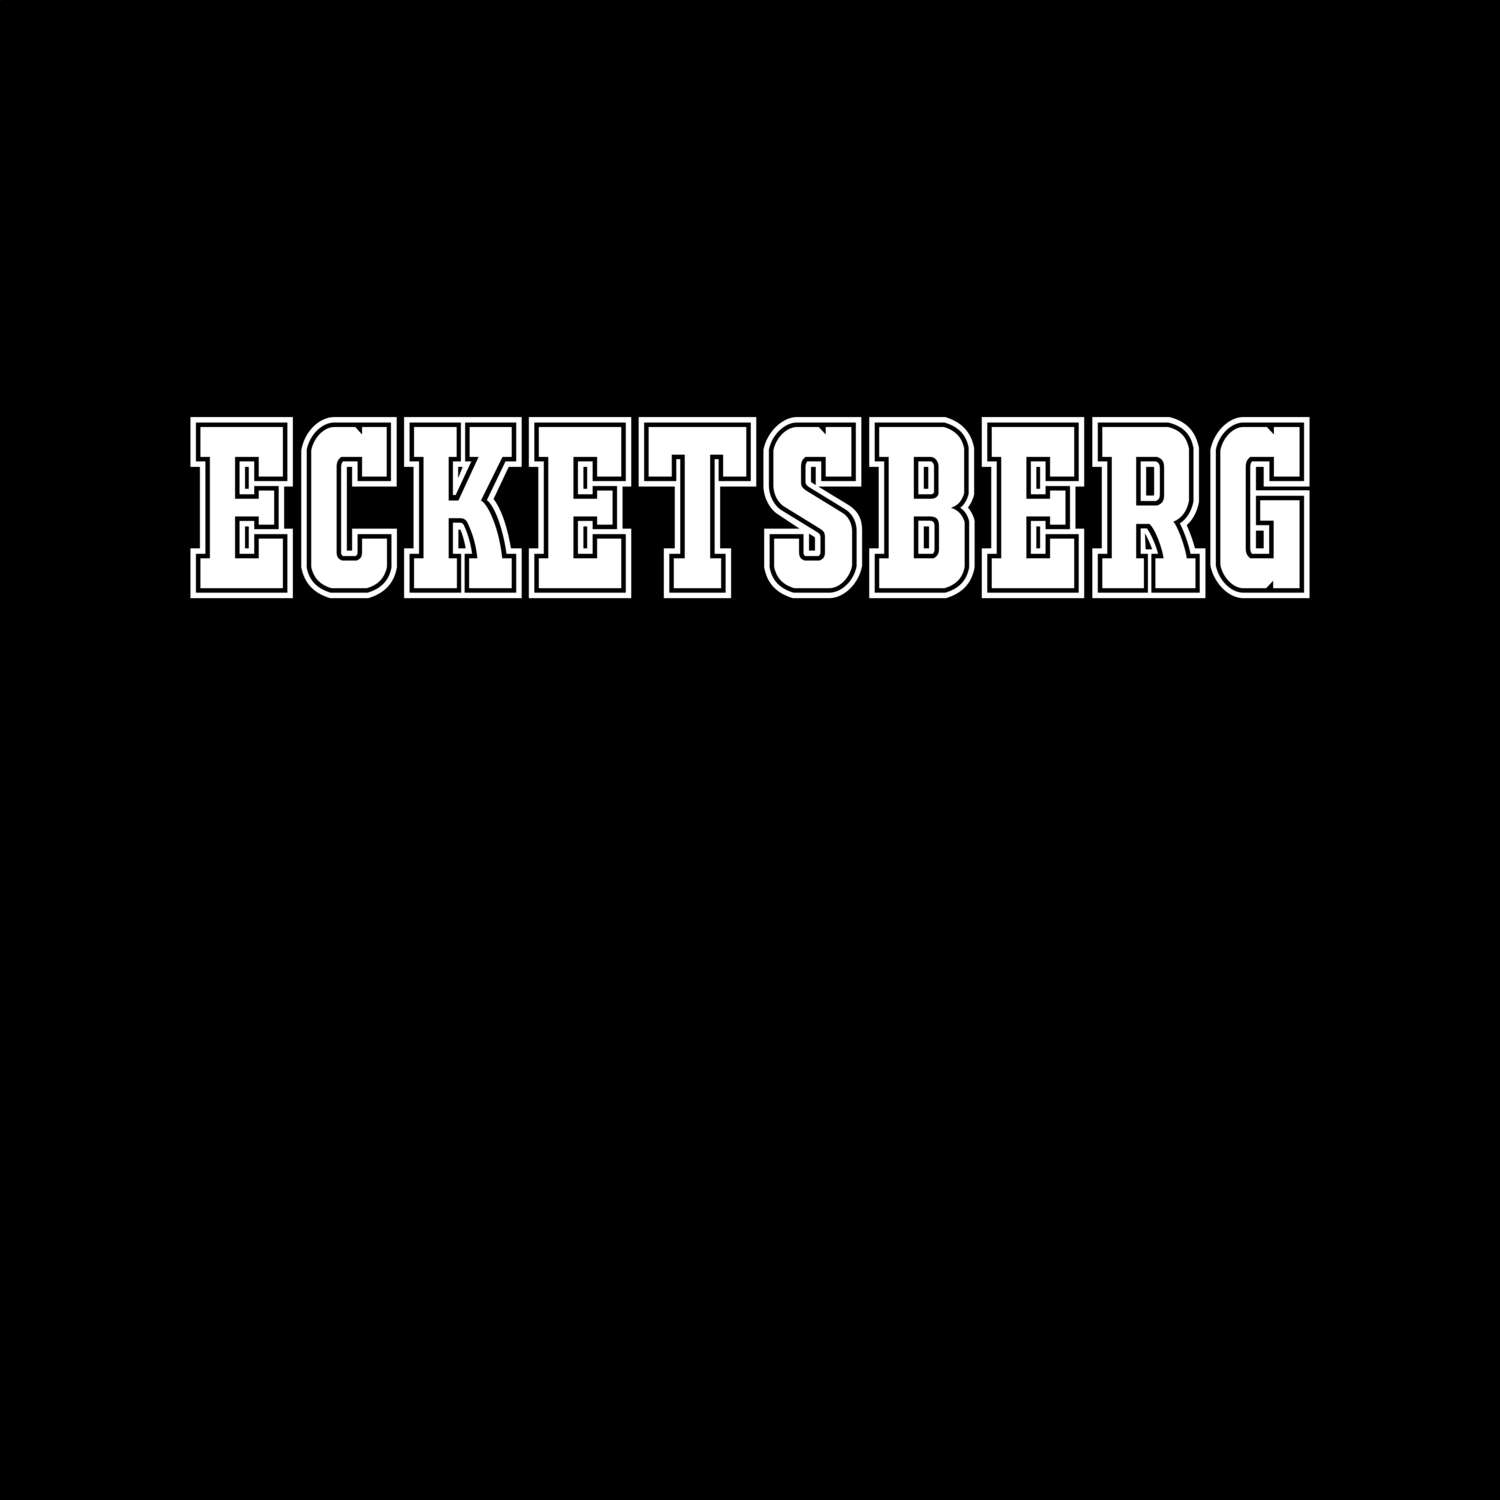 Ecketsberg T-Shirt »Classic«